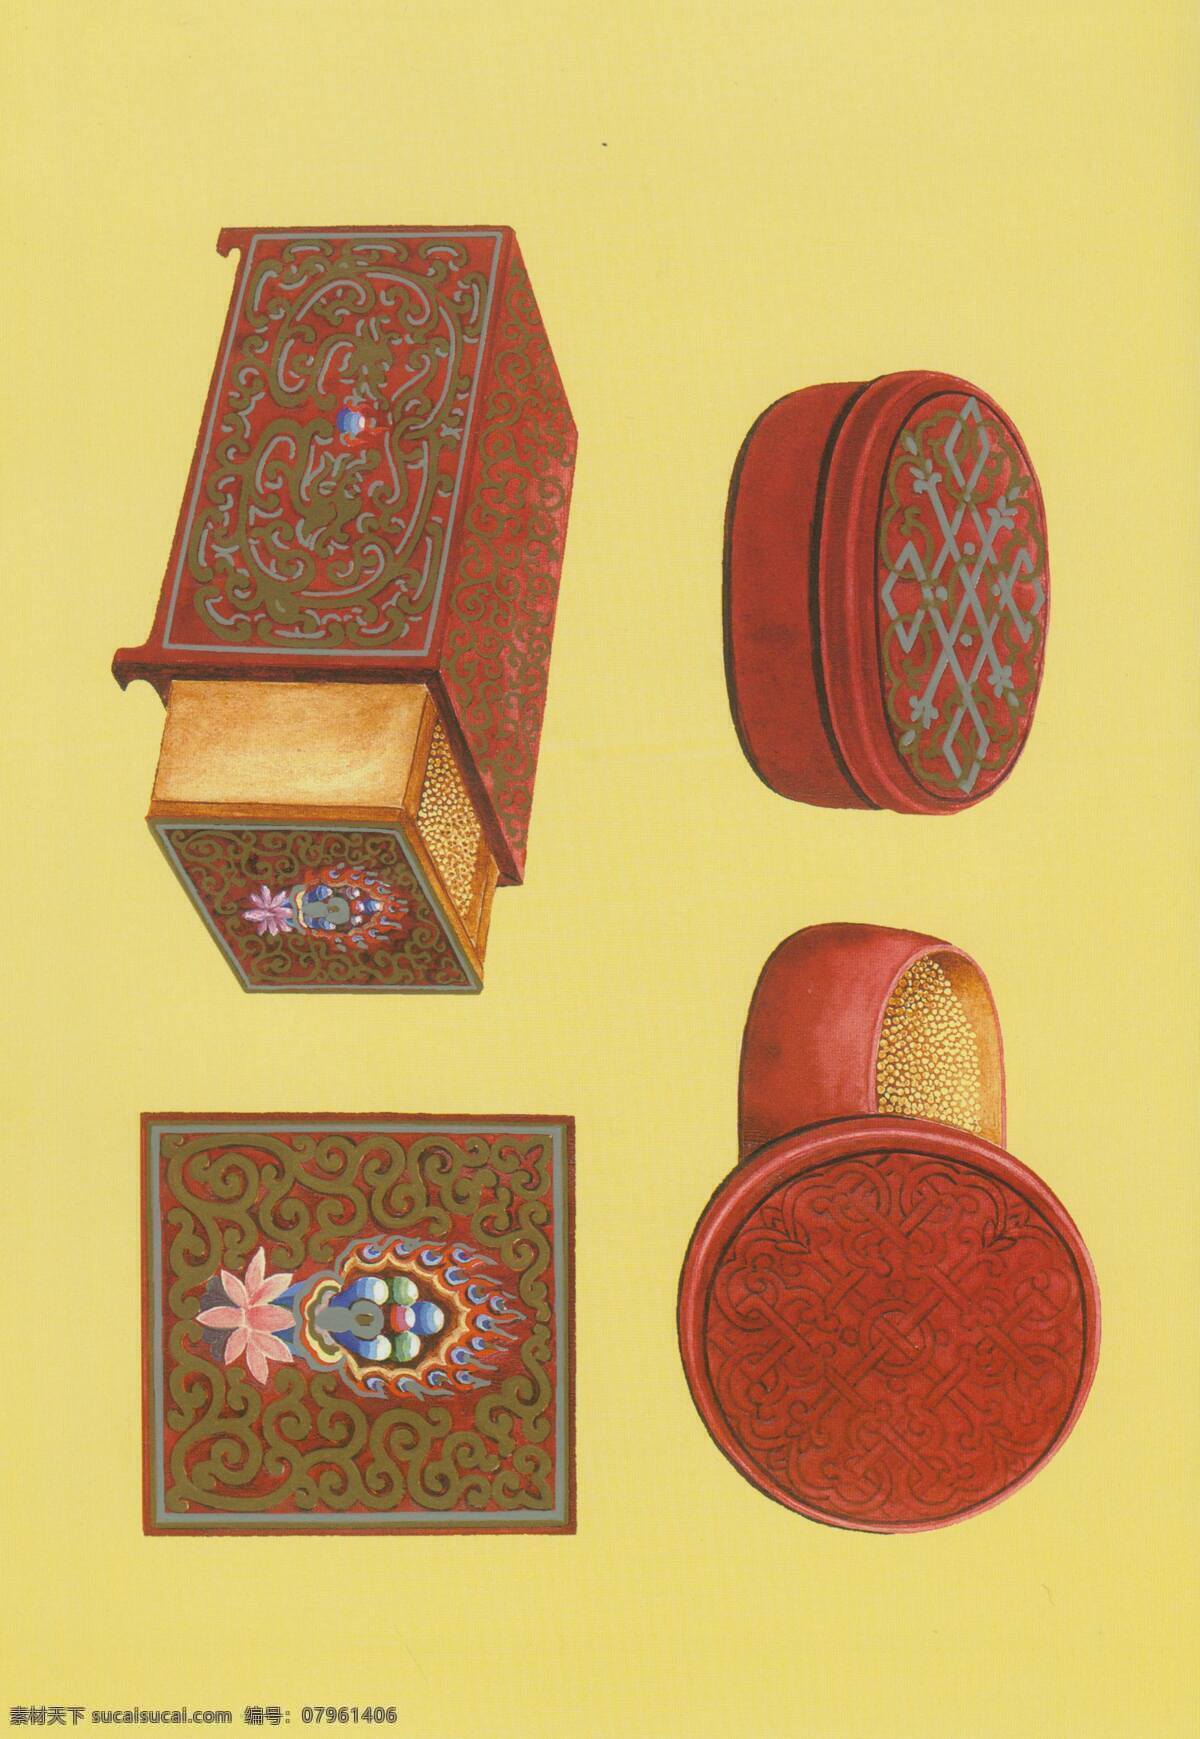 蒙古族图案 蒙古 蒙元文化 蒙族 民族图案 装饰图案 文化艺术 传统文化